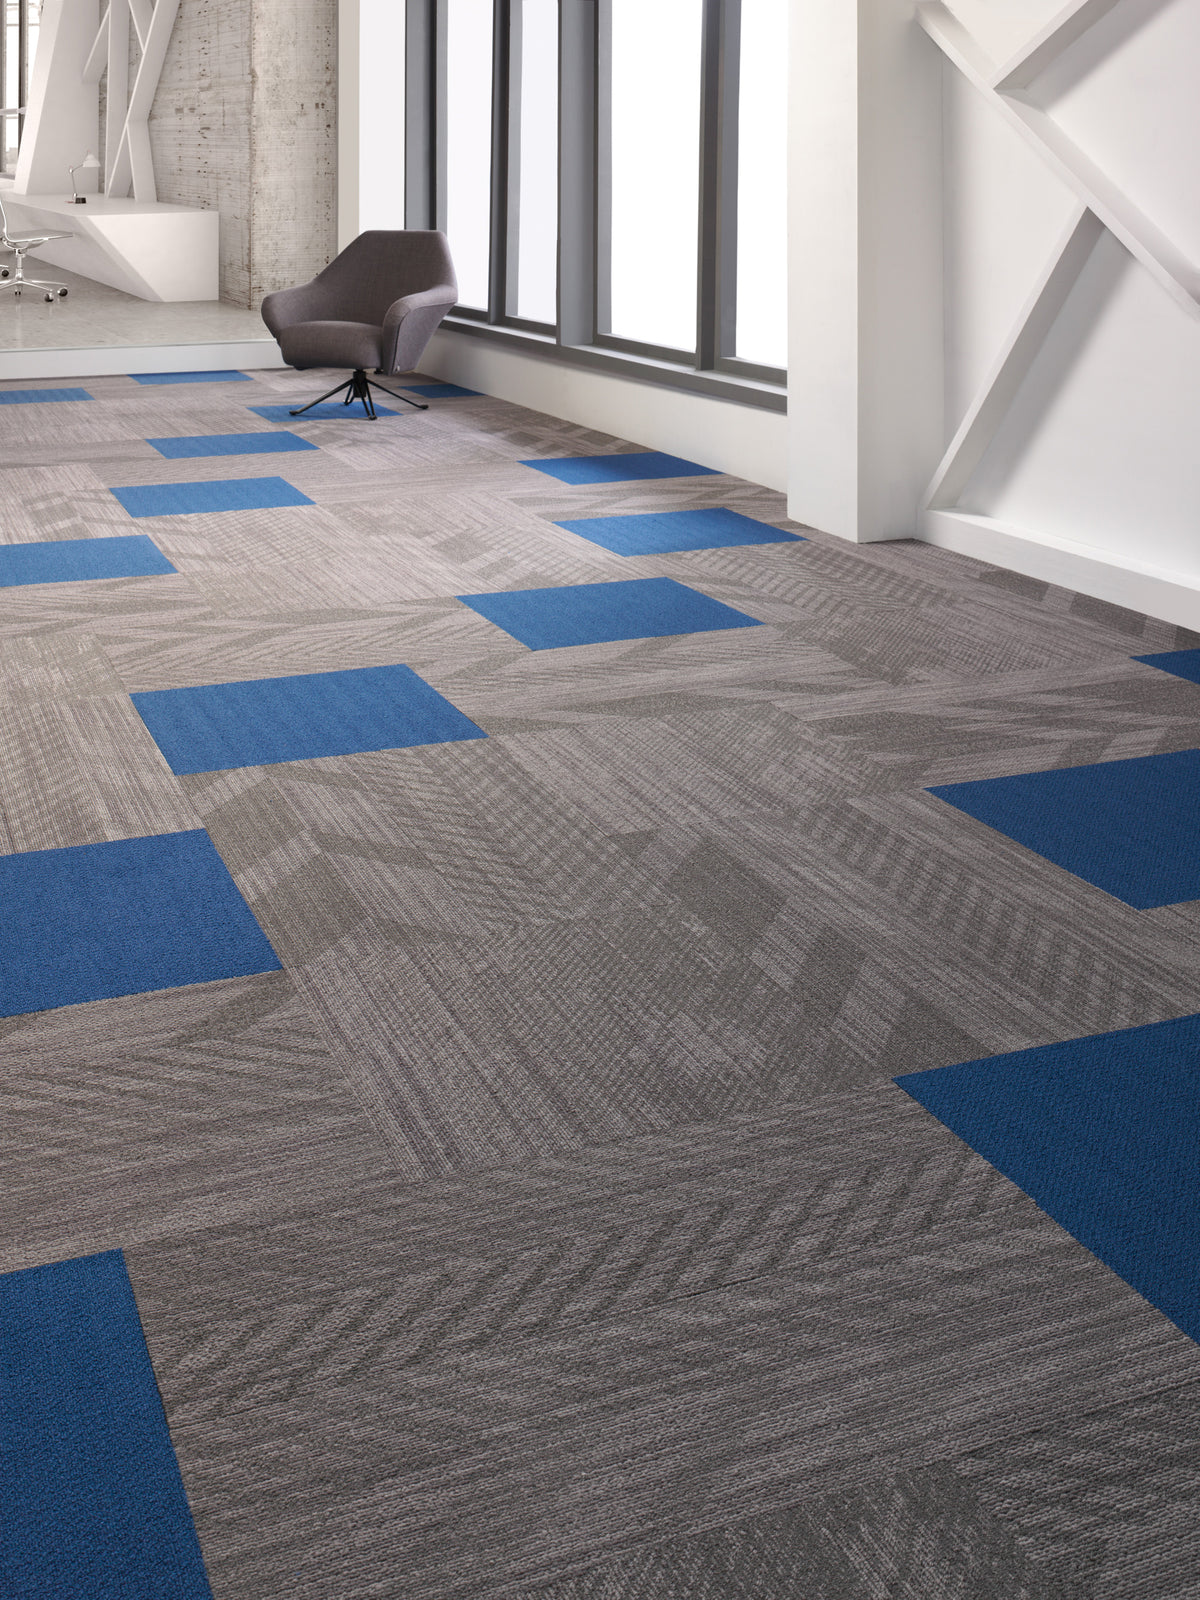 Mohawk Group - Colorbeat - Commercial Carpet Tile - Electric Orange